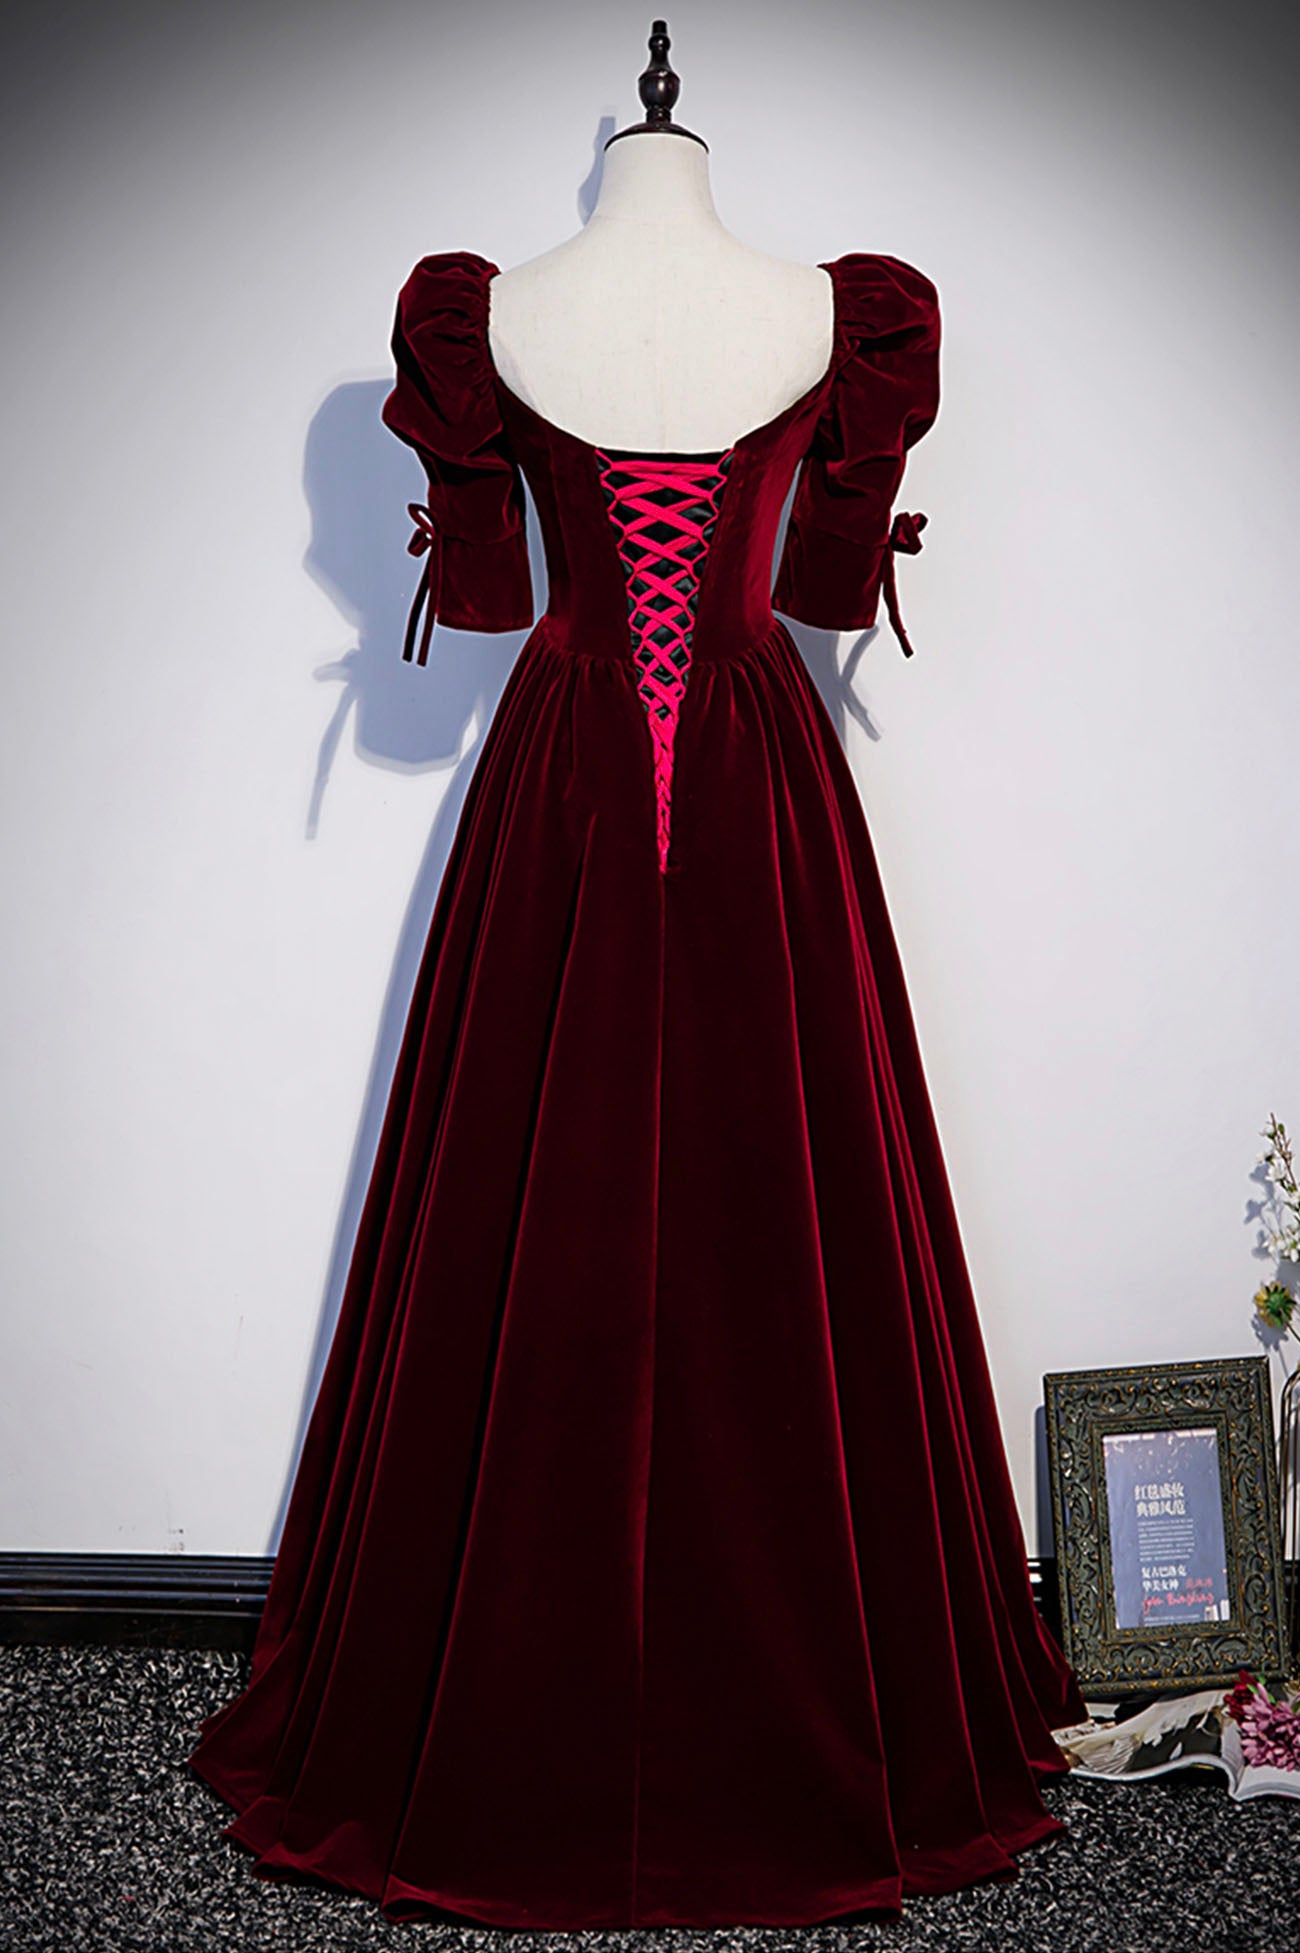 Burgundy Velvet Long A-Line Prom Dress